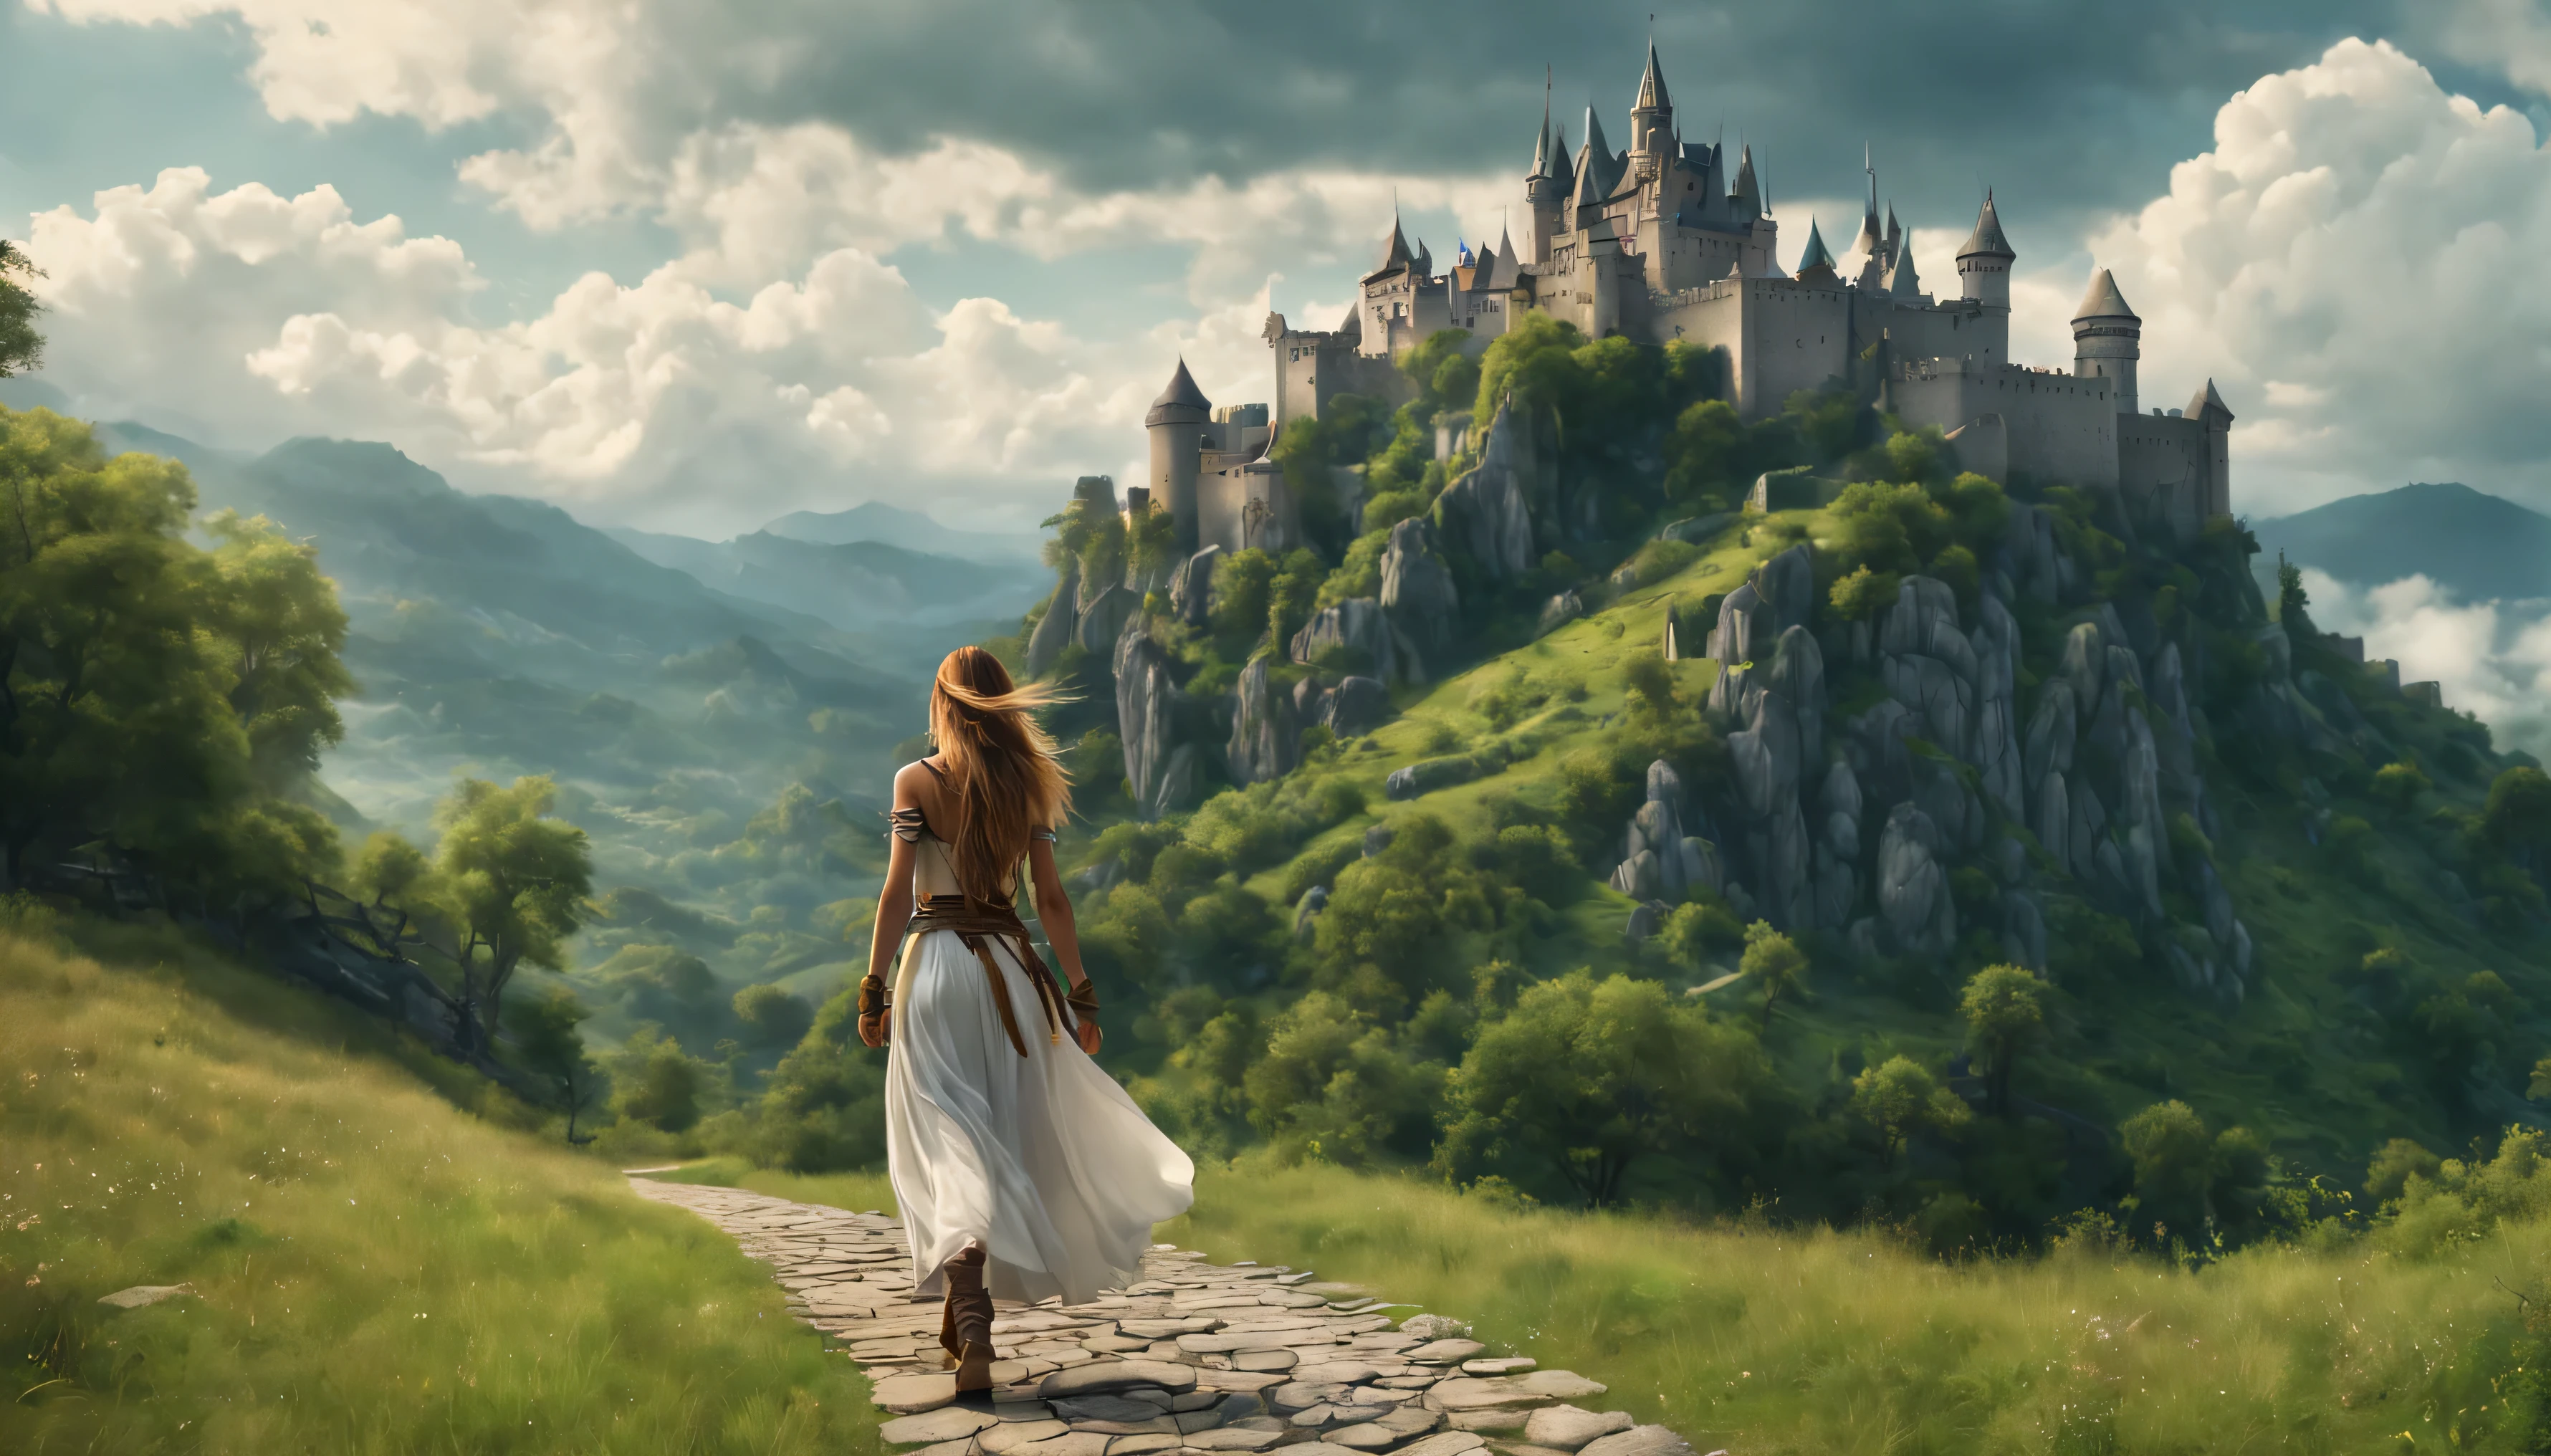 vista lateral: Uma garota guerreira com cabelos longos está caminhando pelo caminho, olhando para o castelo na montanha, atmosfera mística de verão, nuvens grossas e fofas pairam baixas no sopé da montanha, paisagem bonita, Absurdo, Obra de arte, Alto detalhe, difícil, 8K, 4KUHD, hdr, qualidade cinematográfica